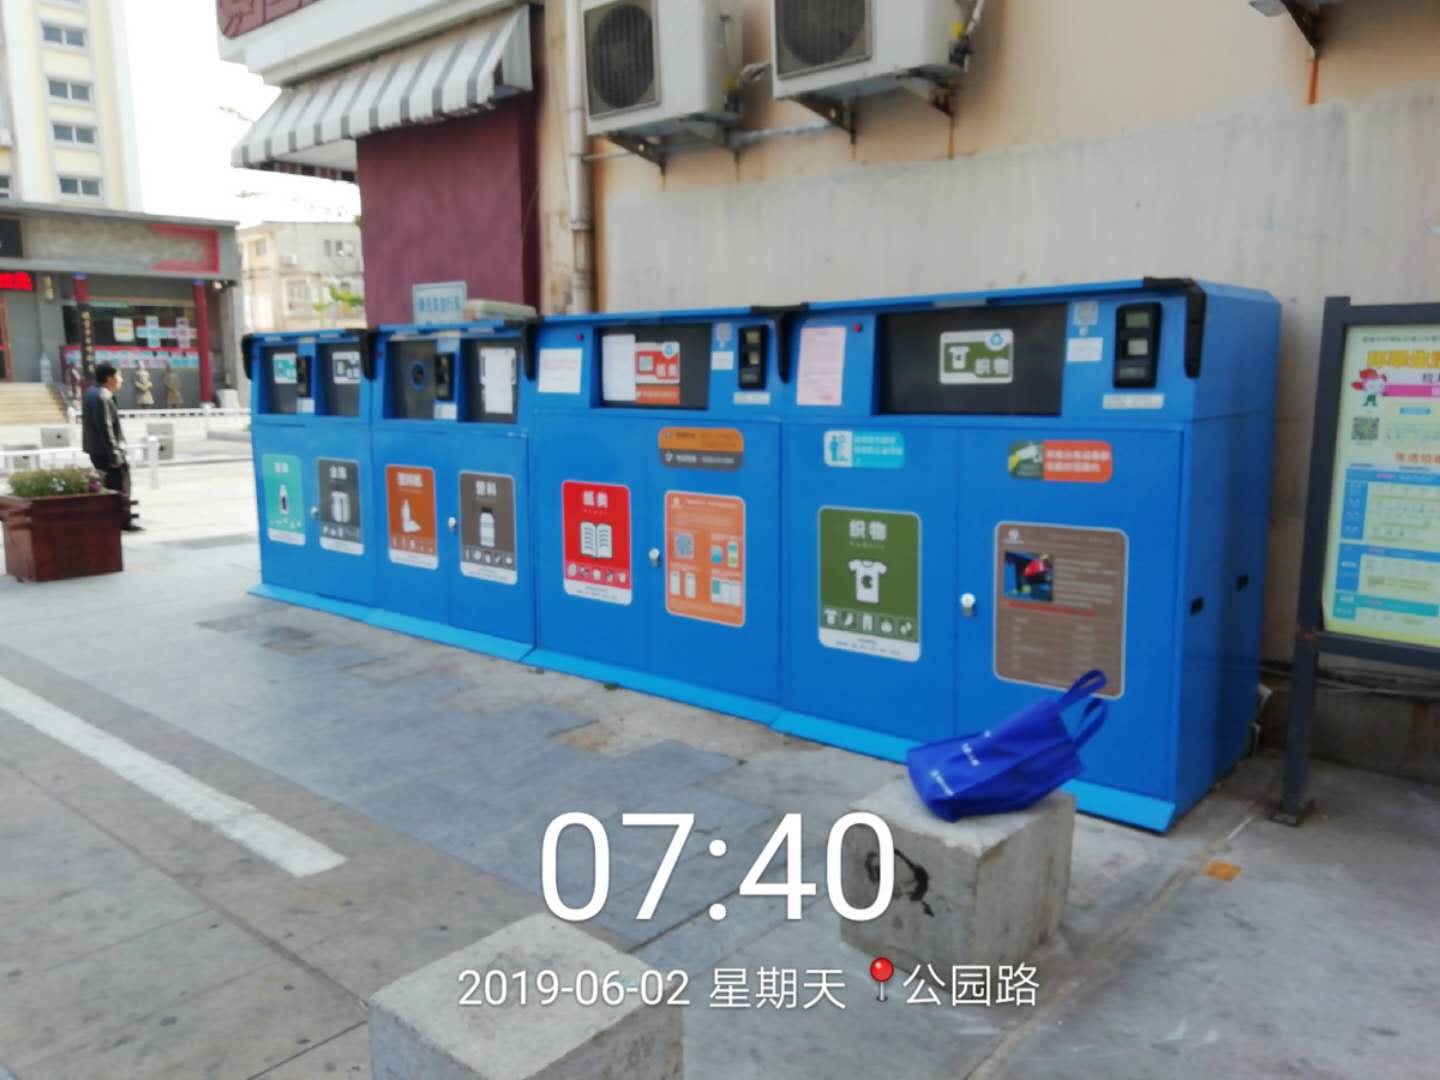 垃圾分类桶,南京垃圾分类桶,垃圾分类桶厂家,南京垃圾分类桶厂家